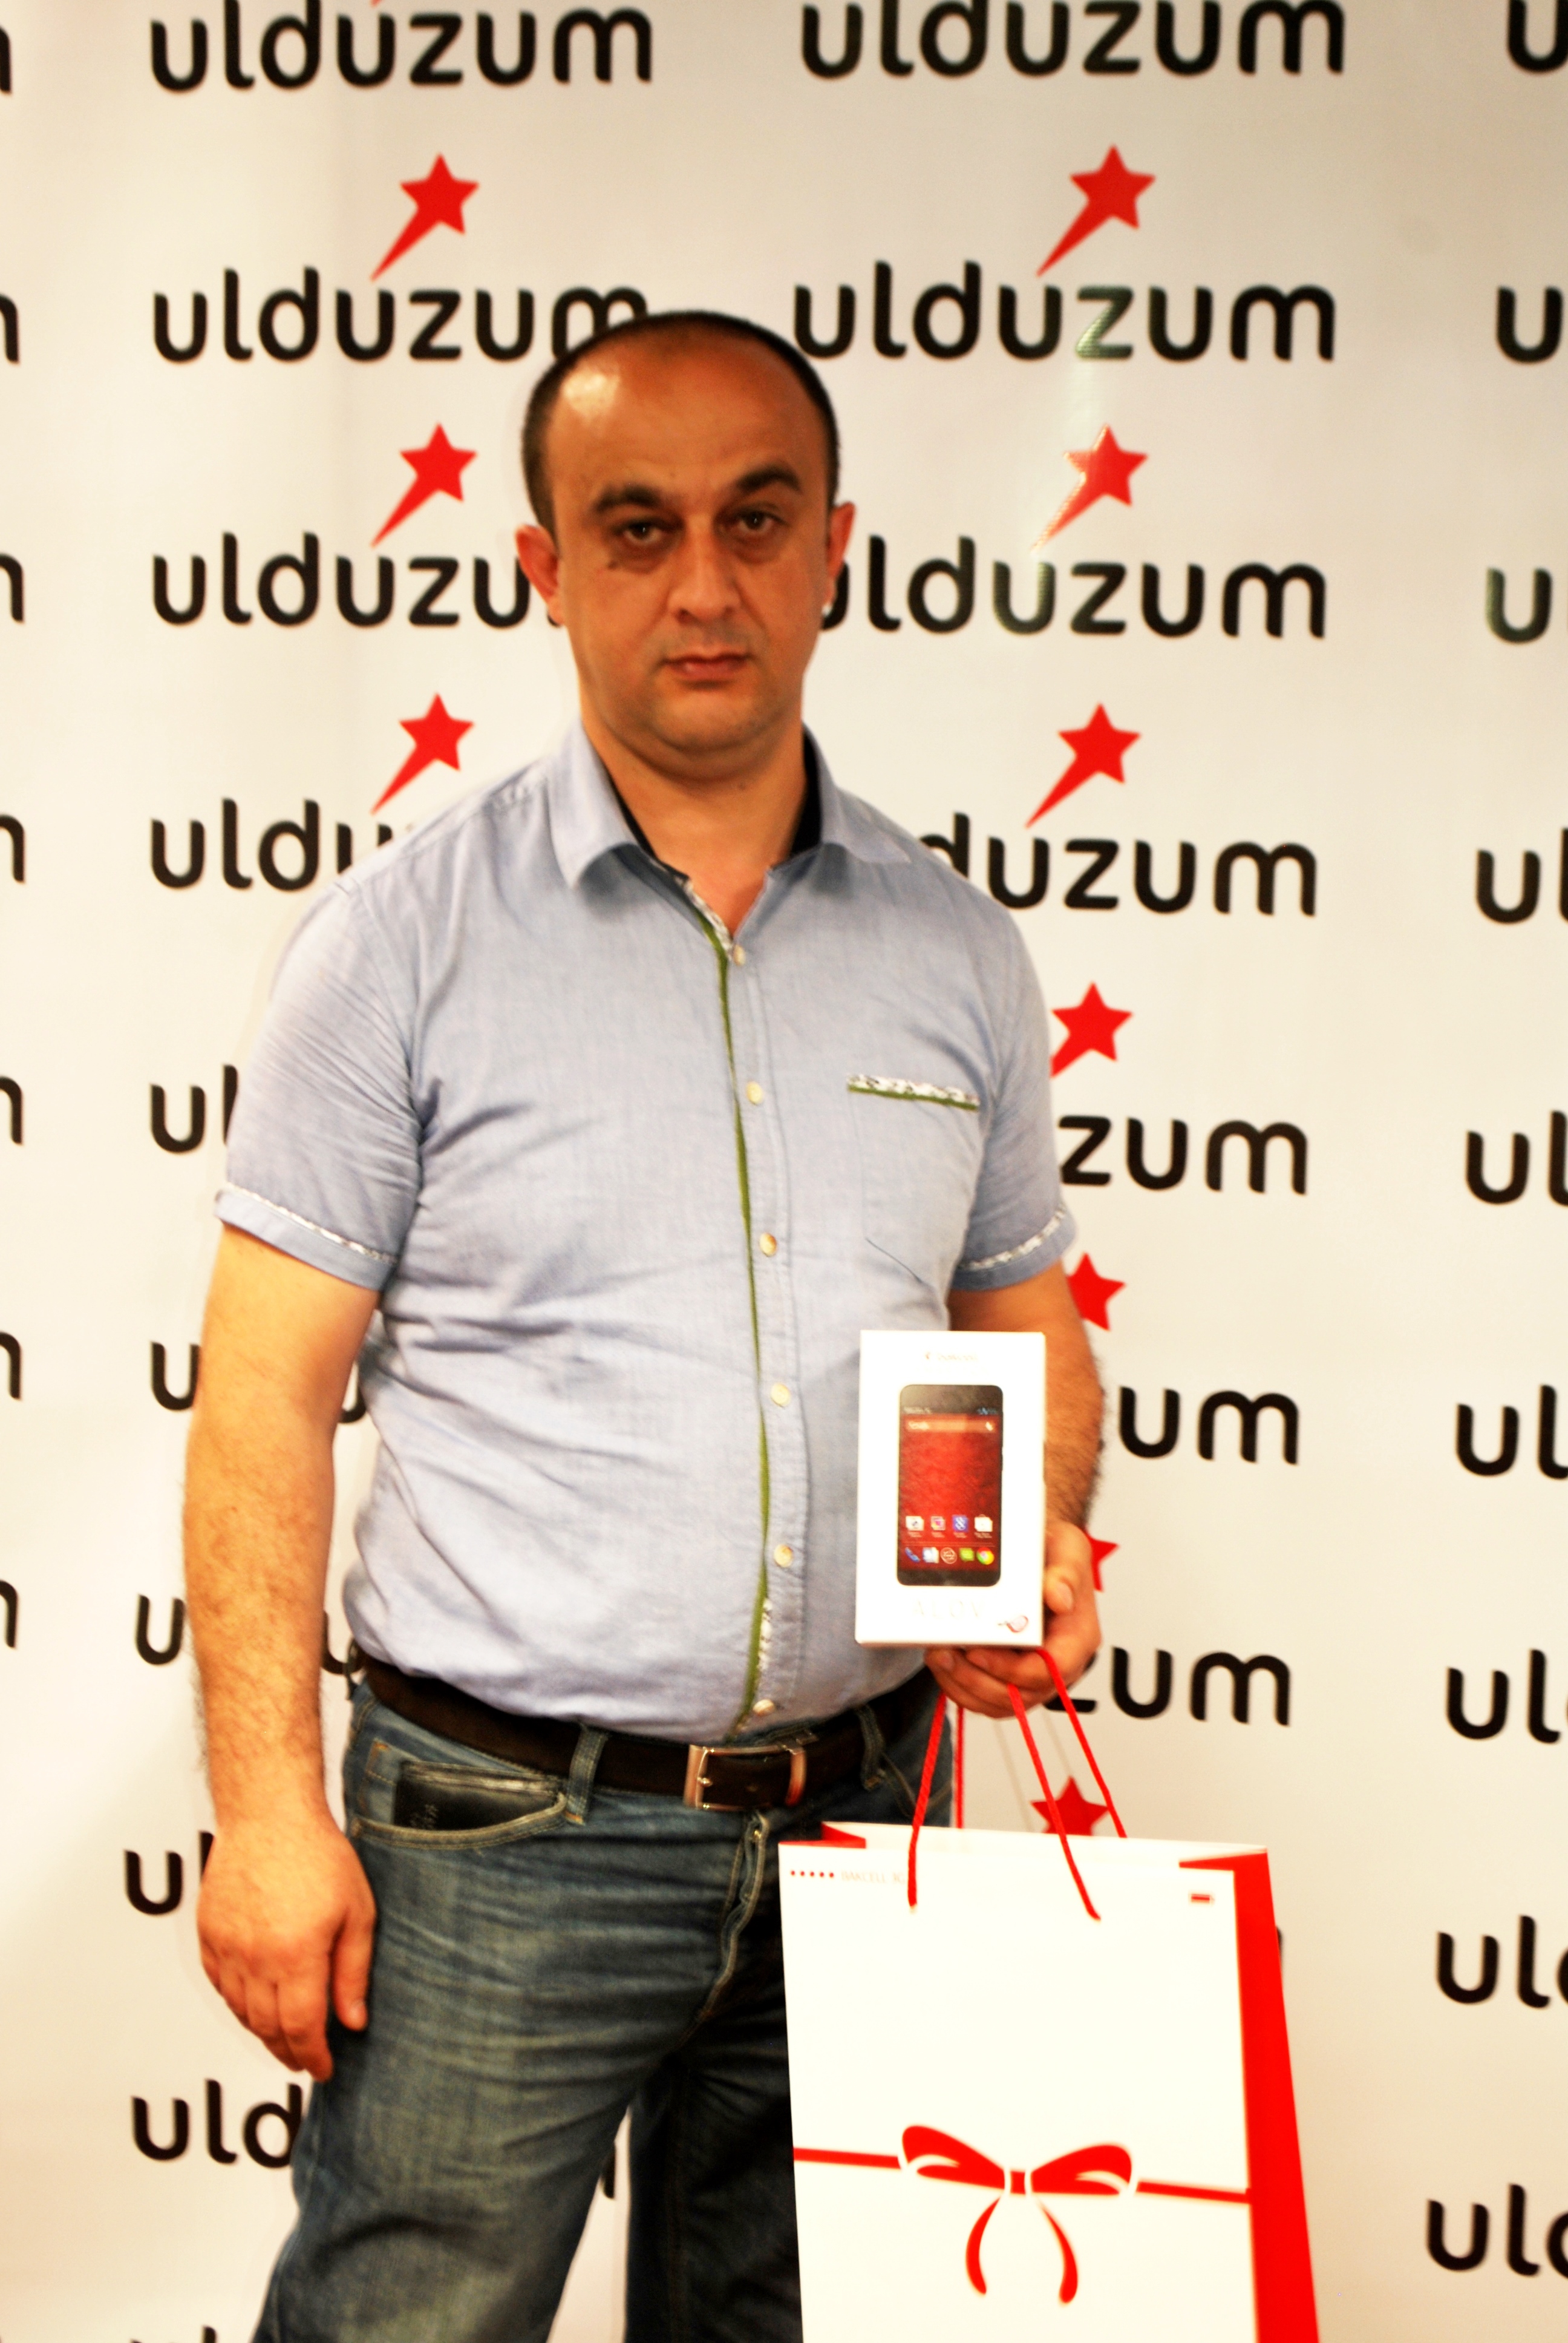 Компания “Bakcell” объявила результаты Весенней лотереи Ulduzum